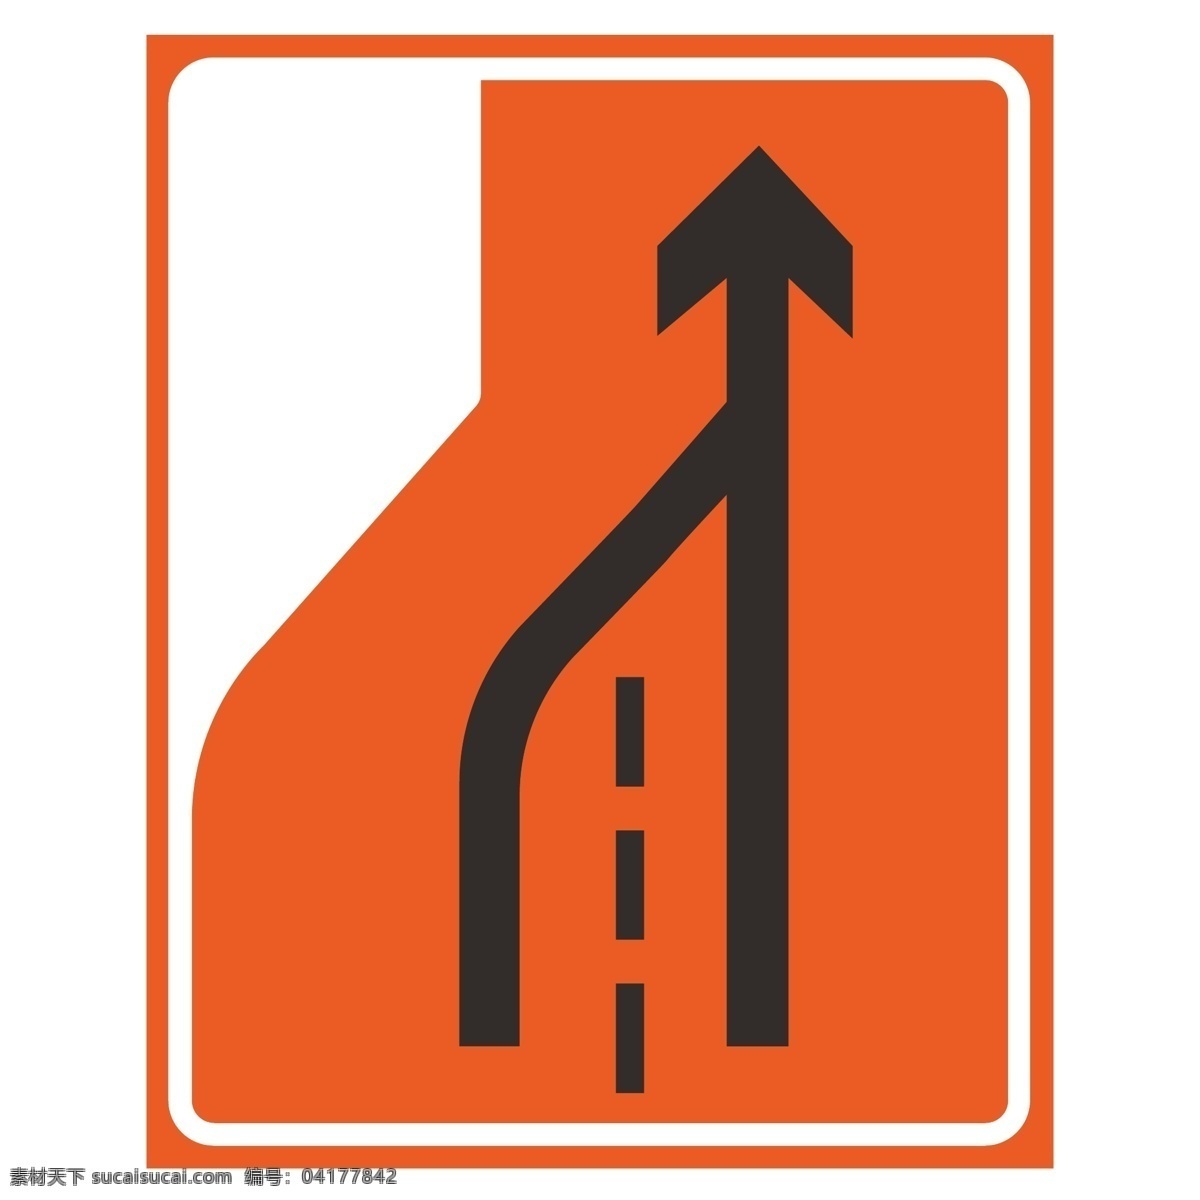 车道 左右 减少 左右导向 车道向右减少 车道向左减少 左导向 右导向 公路牌 室外广告设计